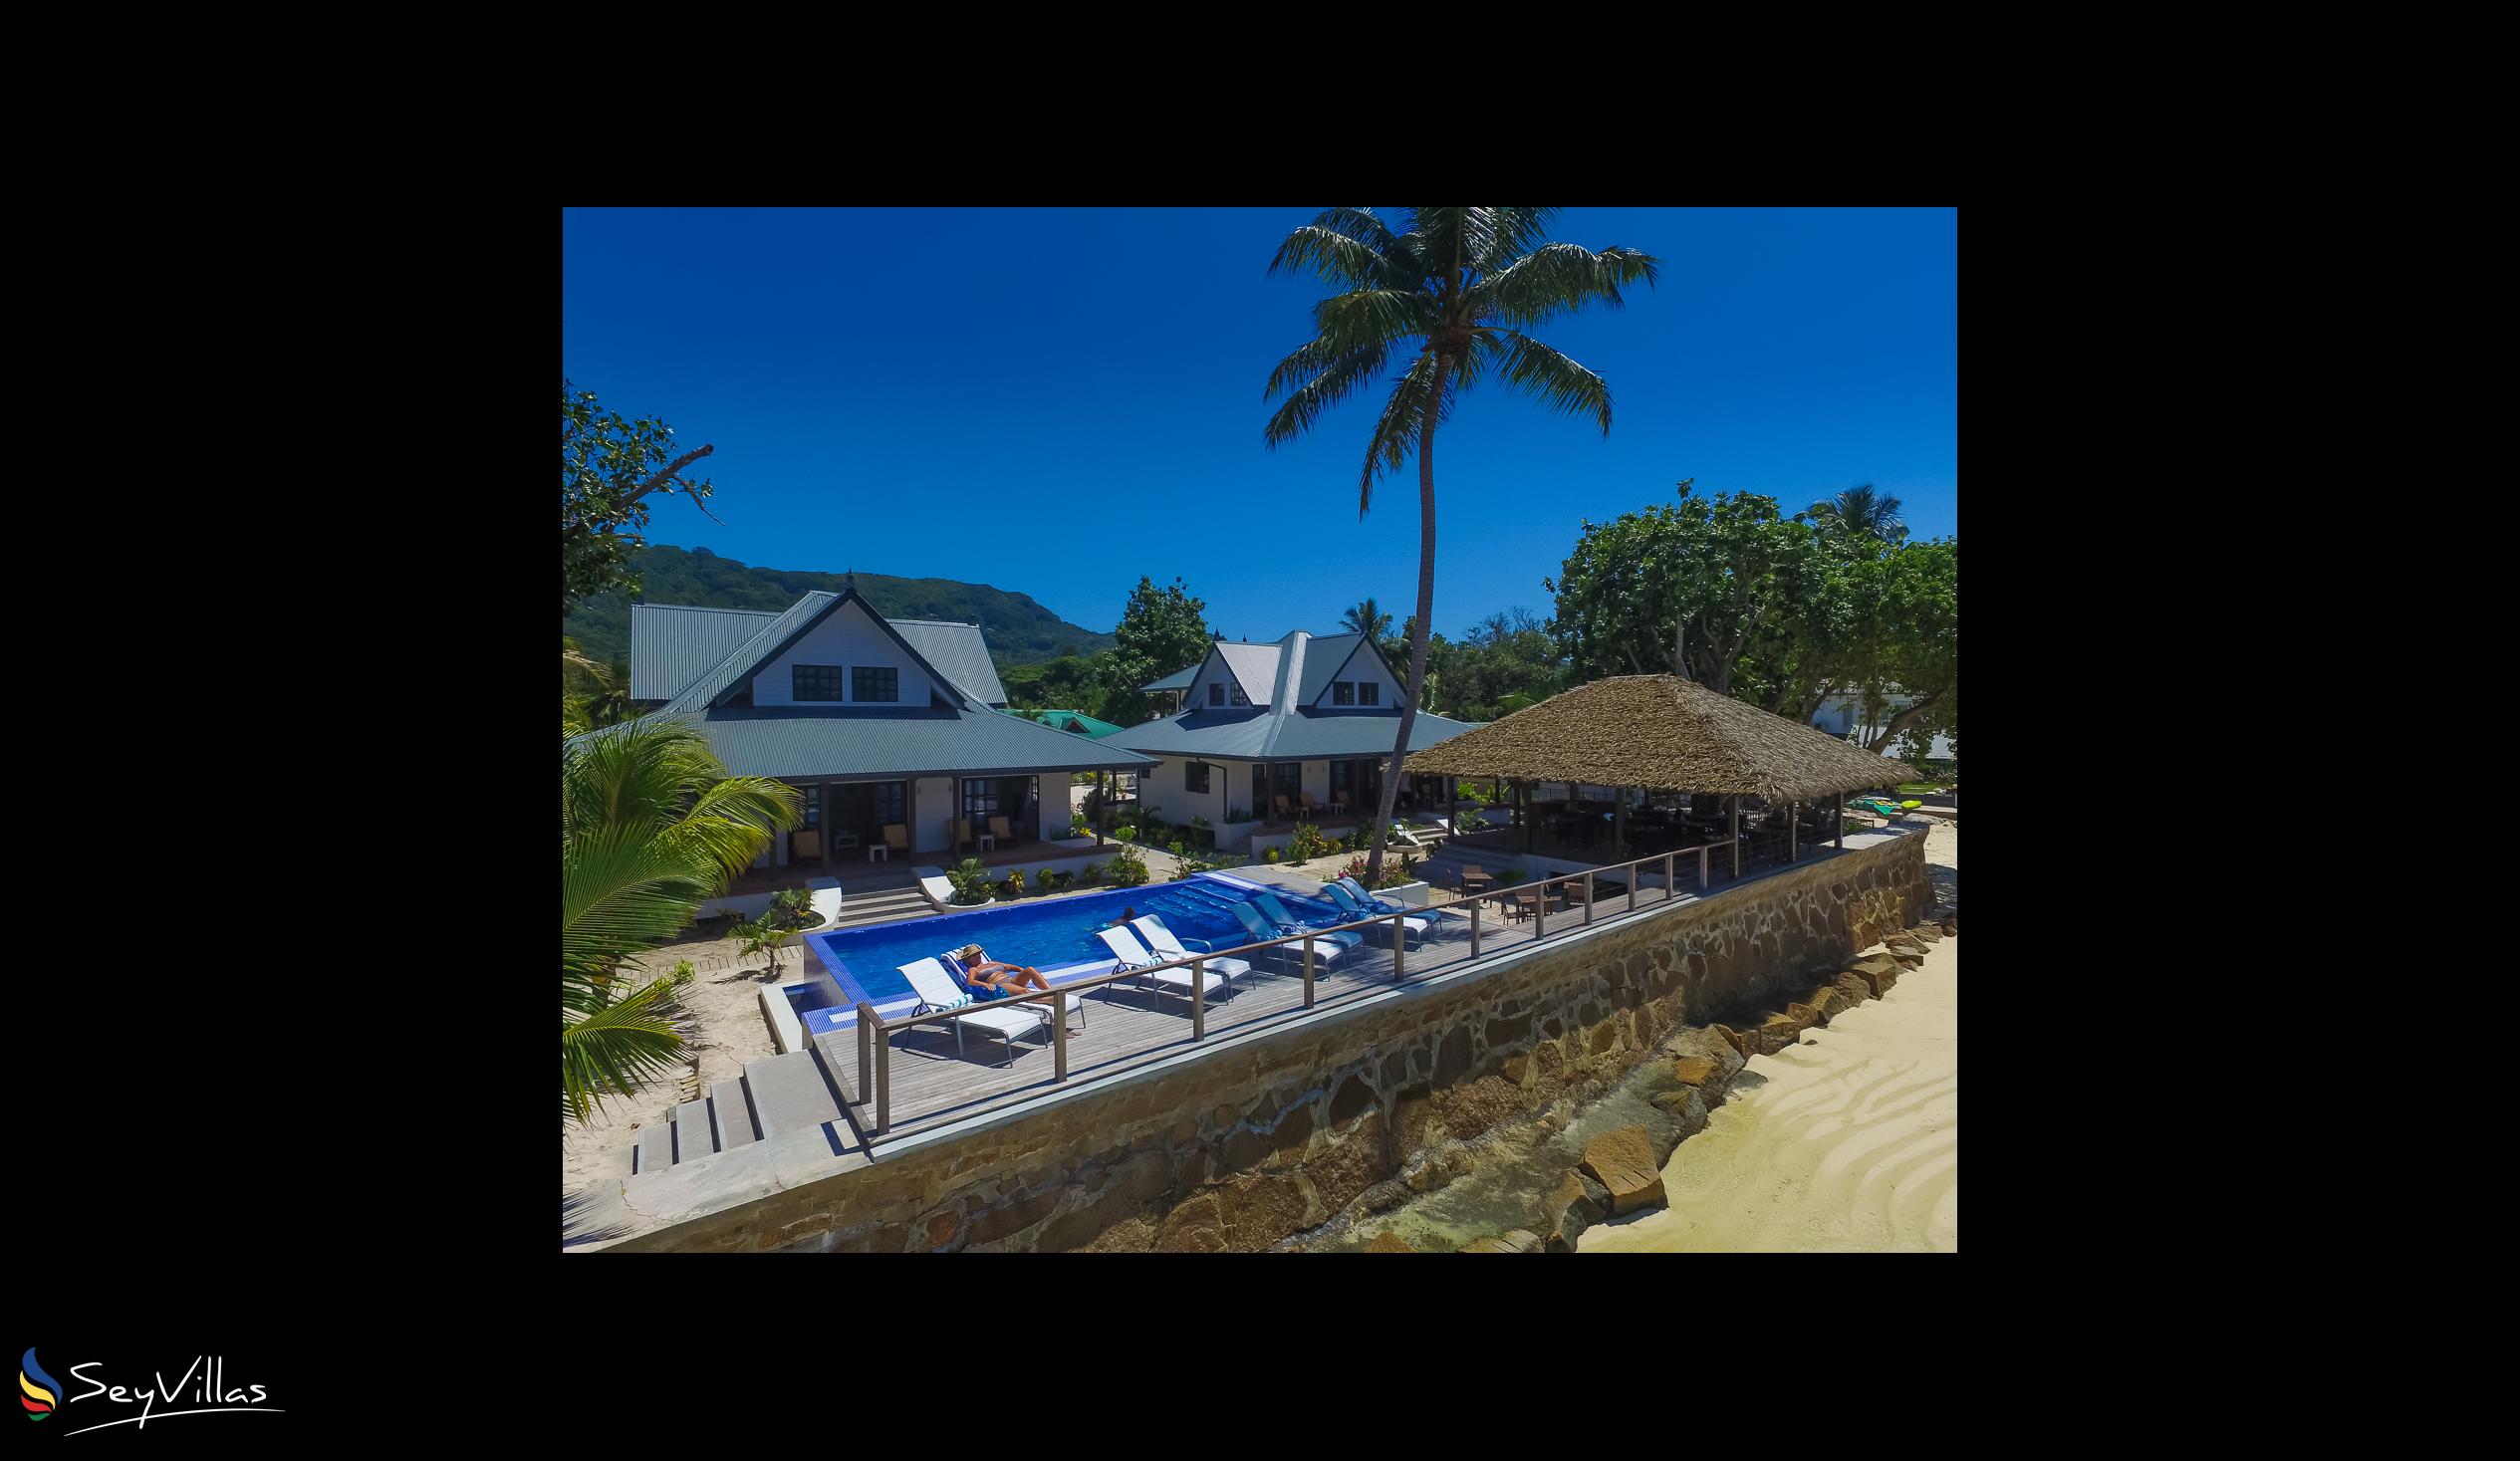 Foto 55: Le Nautique Luxury Waterfront Hotel - Aussenbereich - La Digue (Seychellen)